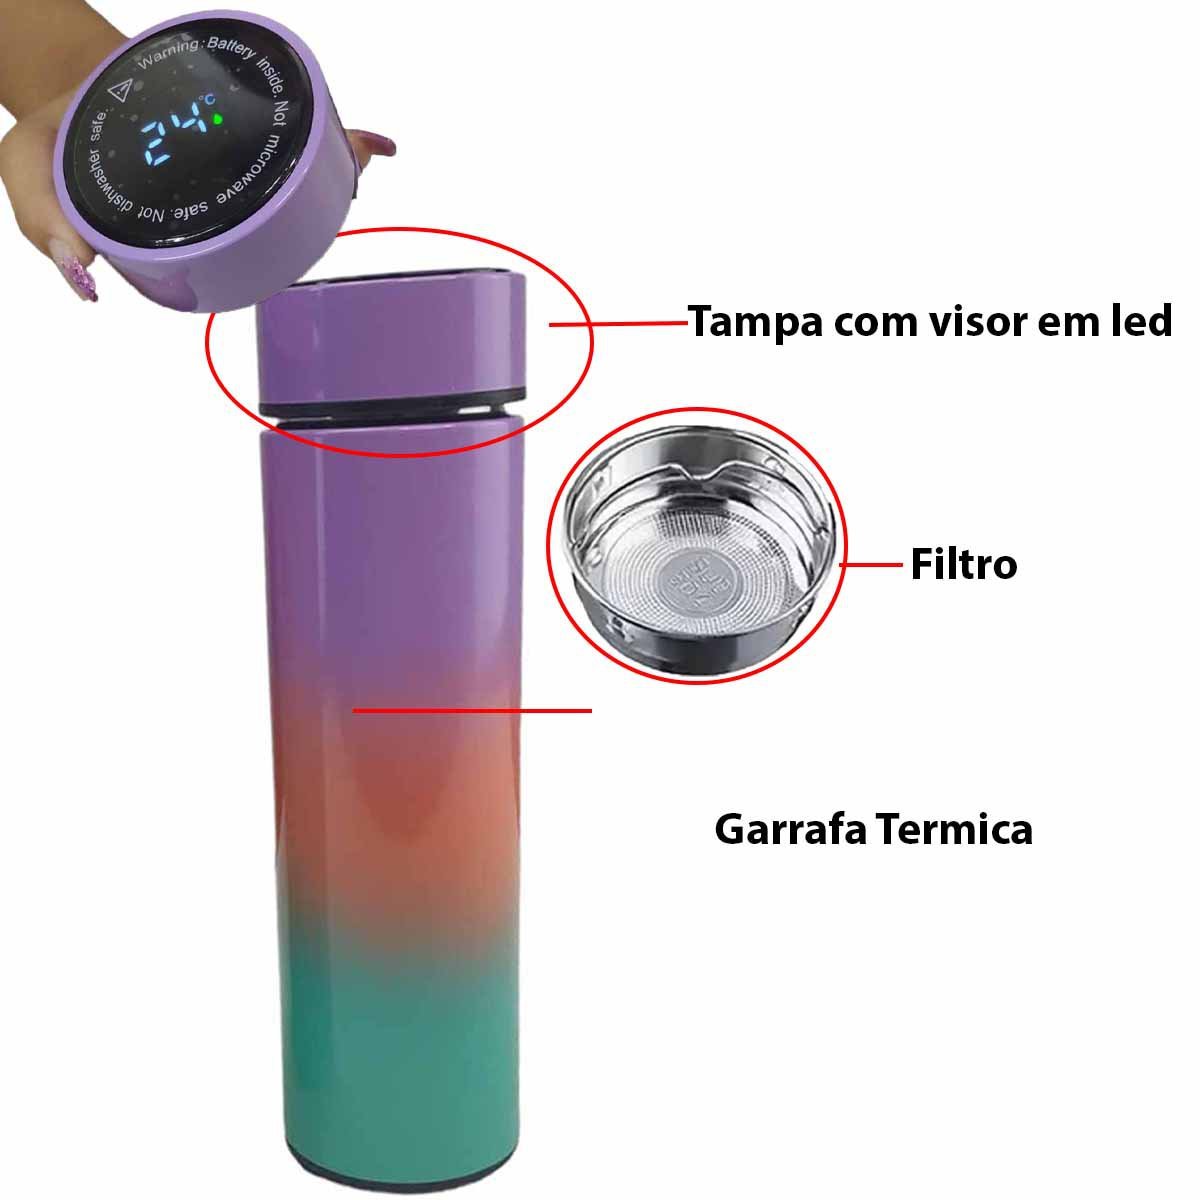 Garrafa Termica Inox Sensor Temperatura Kit 2 Squeeze Resistente Led Visor Treino Academia Estudos C - 3